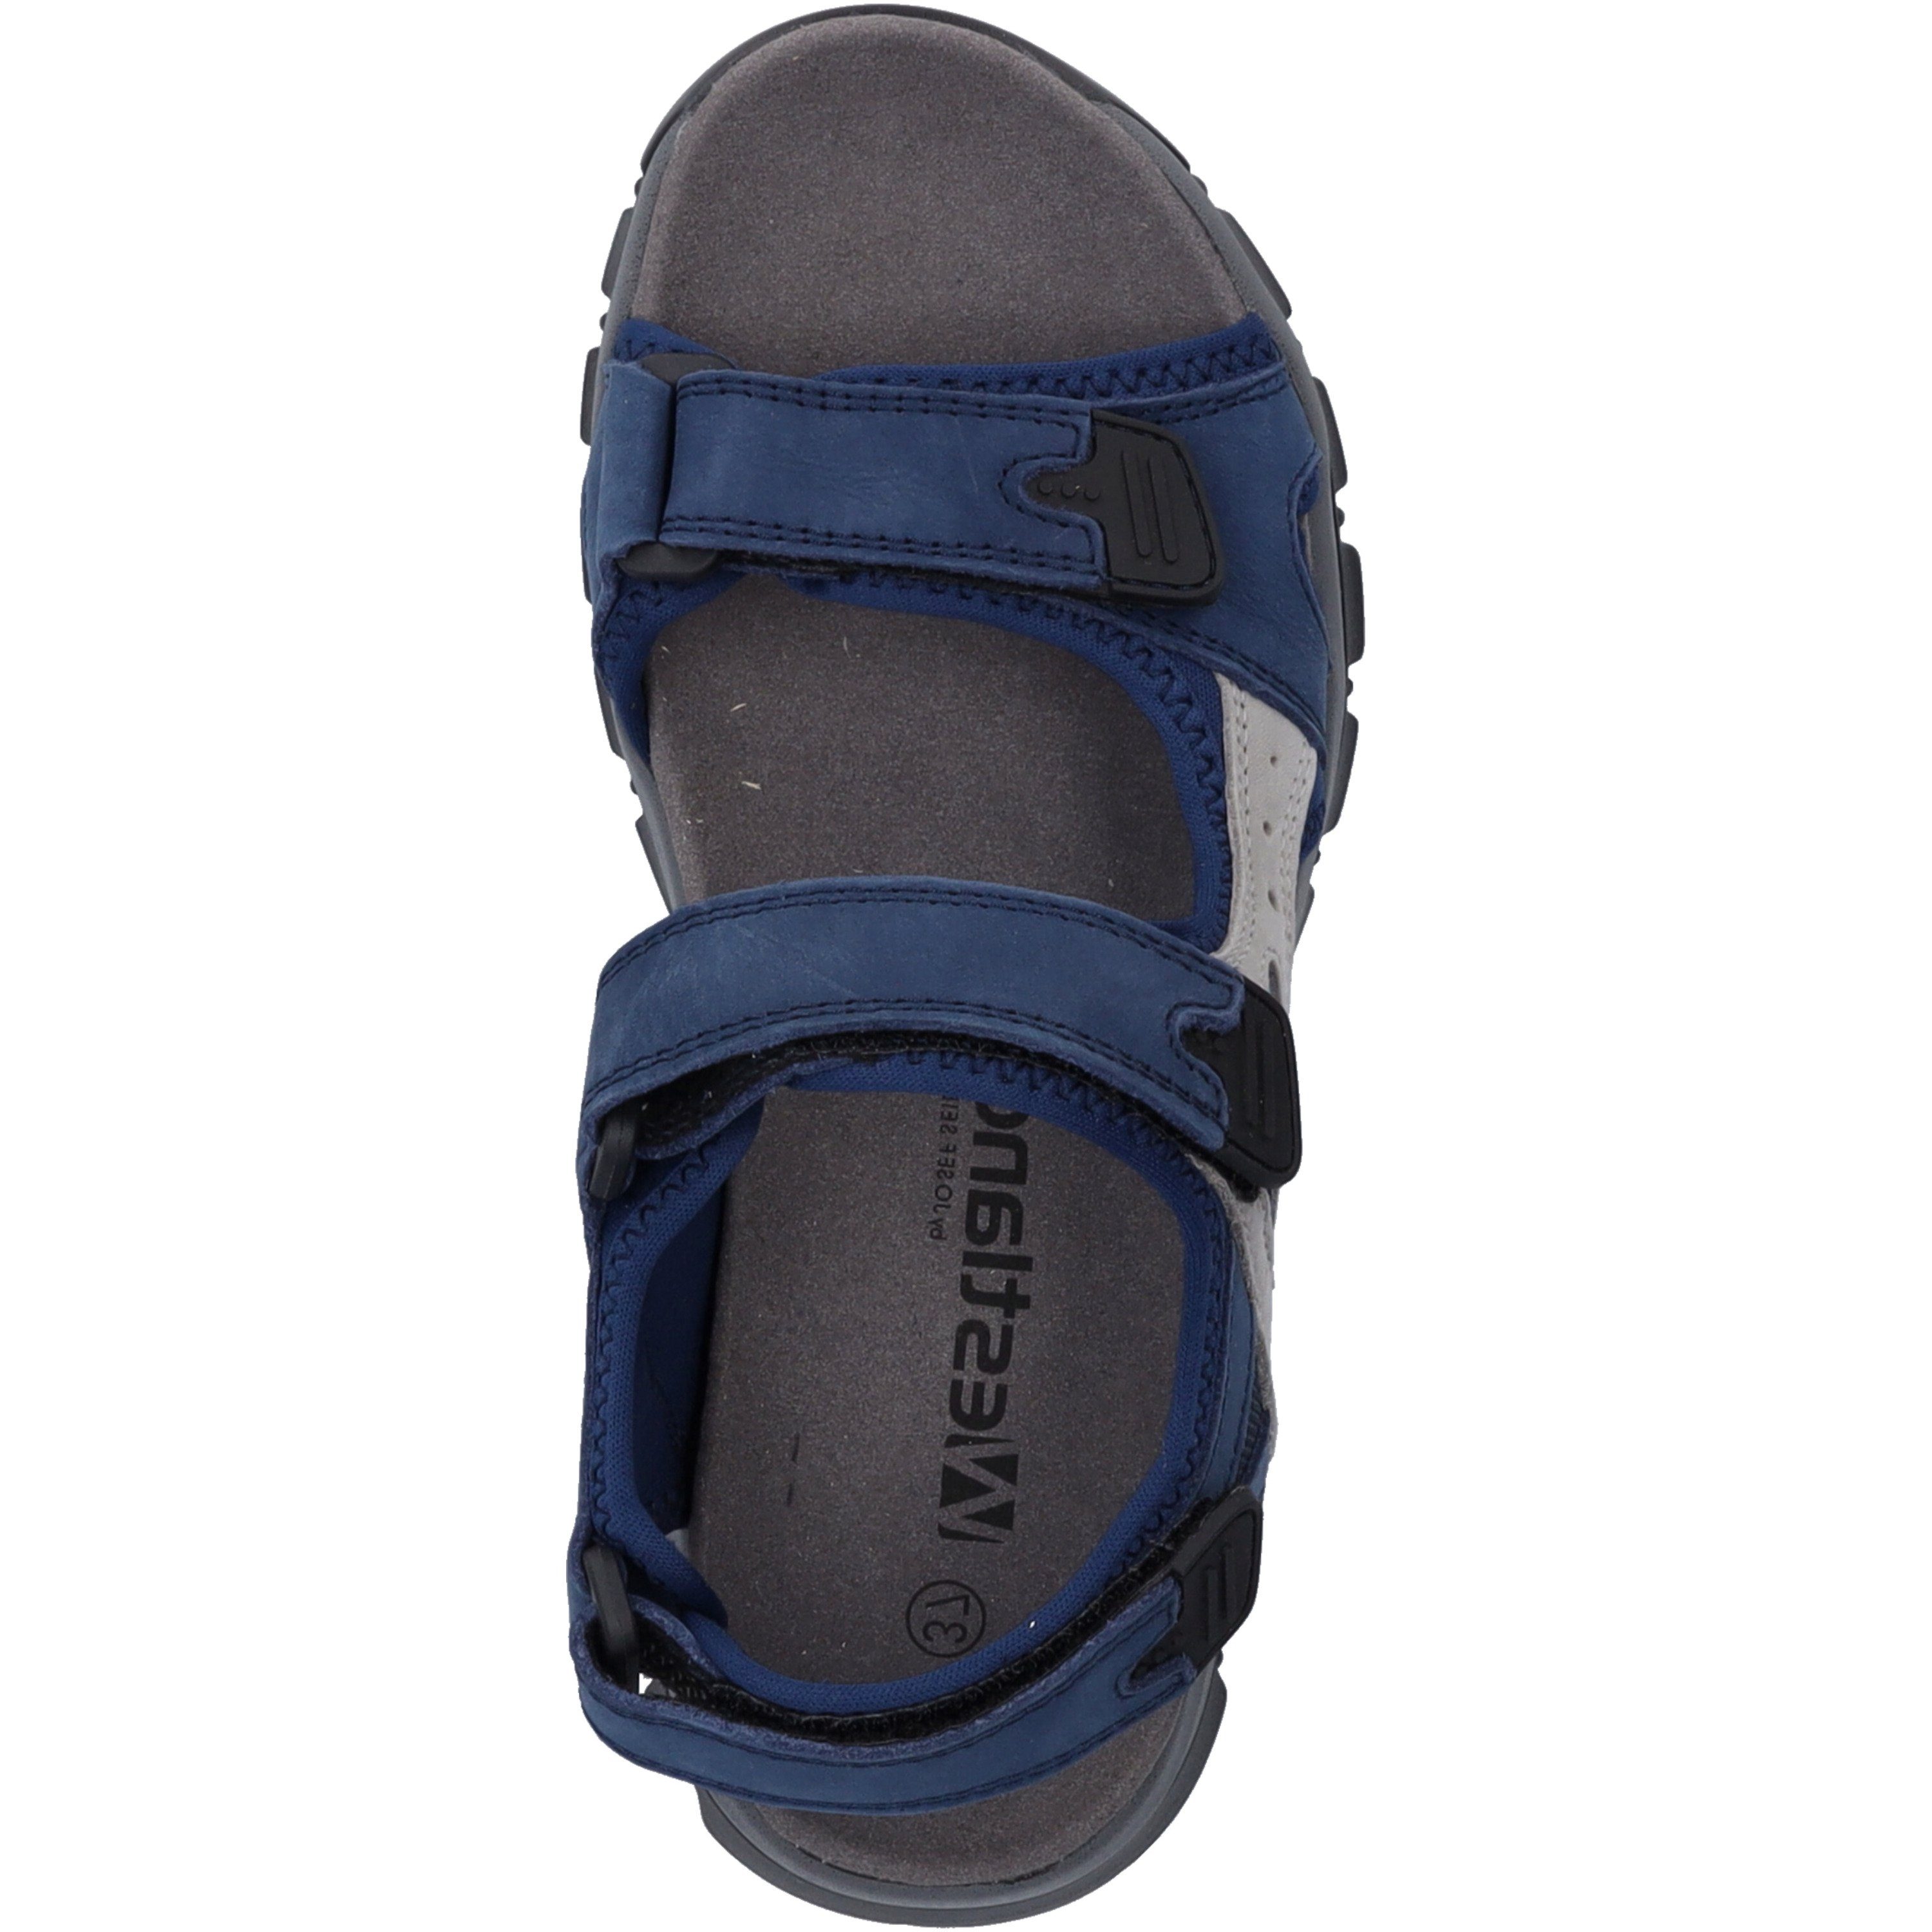 Sandale blau Avora Westland 02, blau-kombi